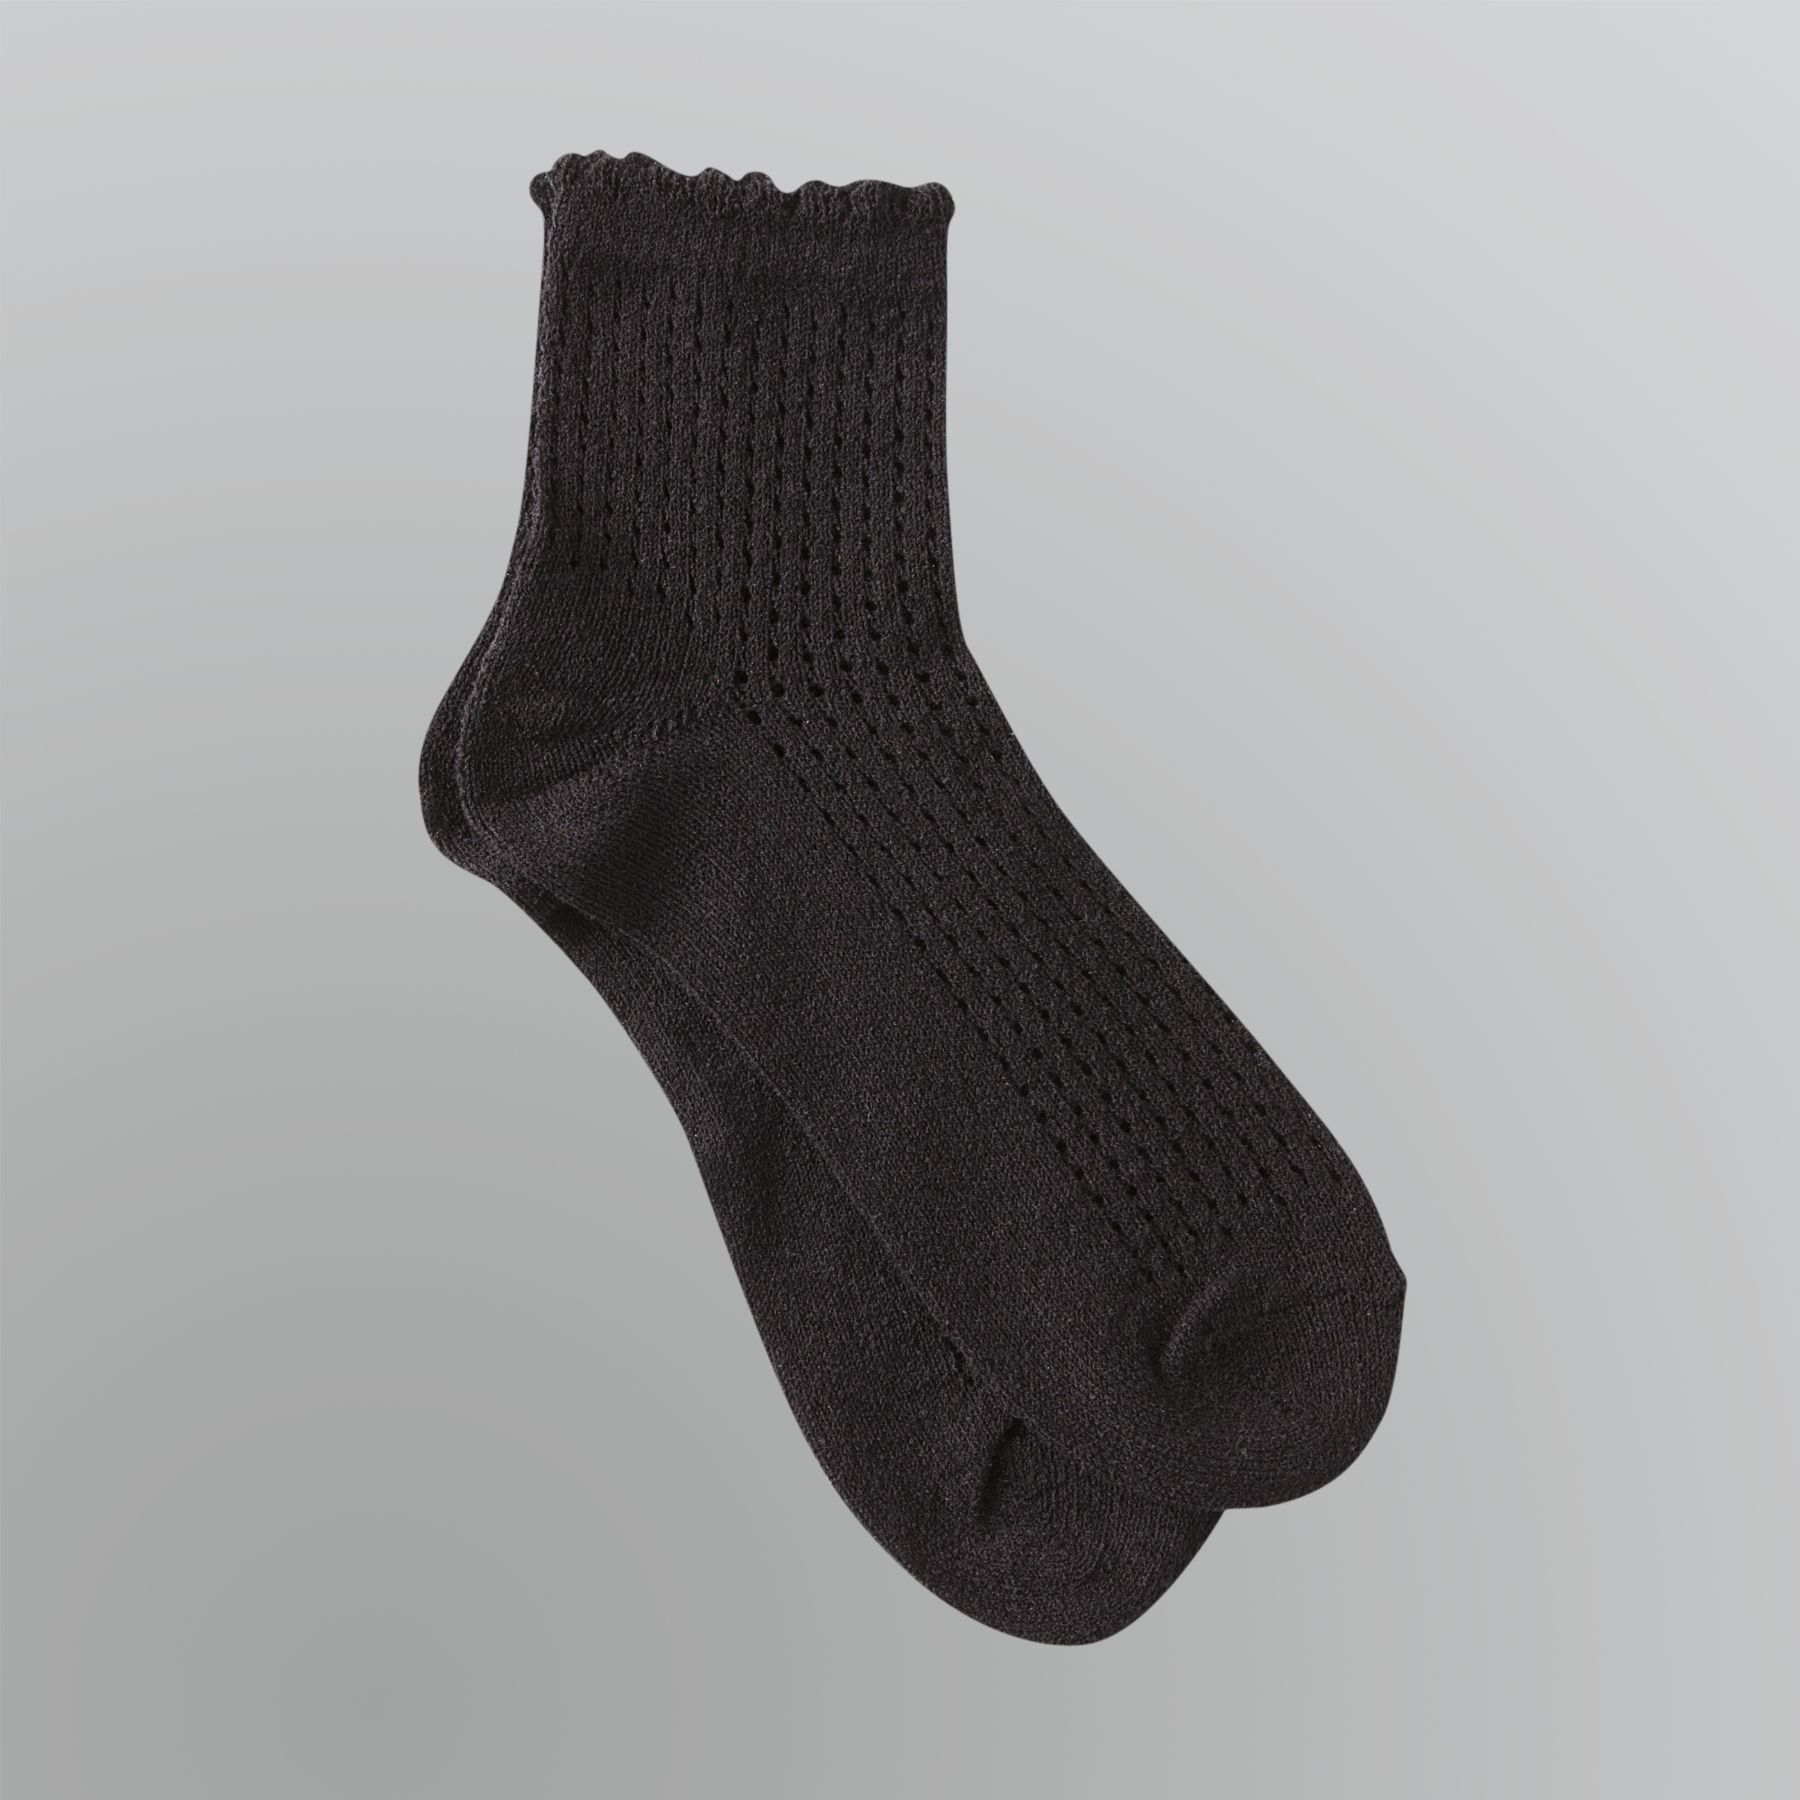 Silvertoe Women's Knit Ankle Socks